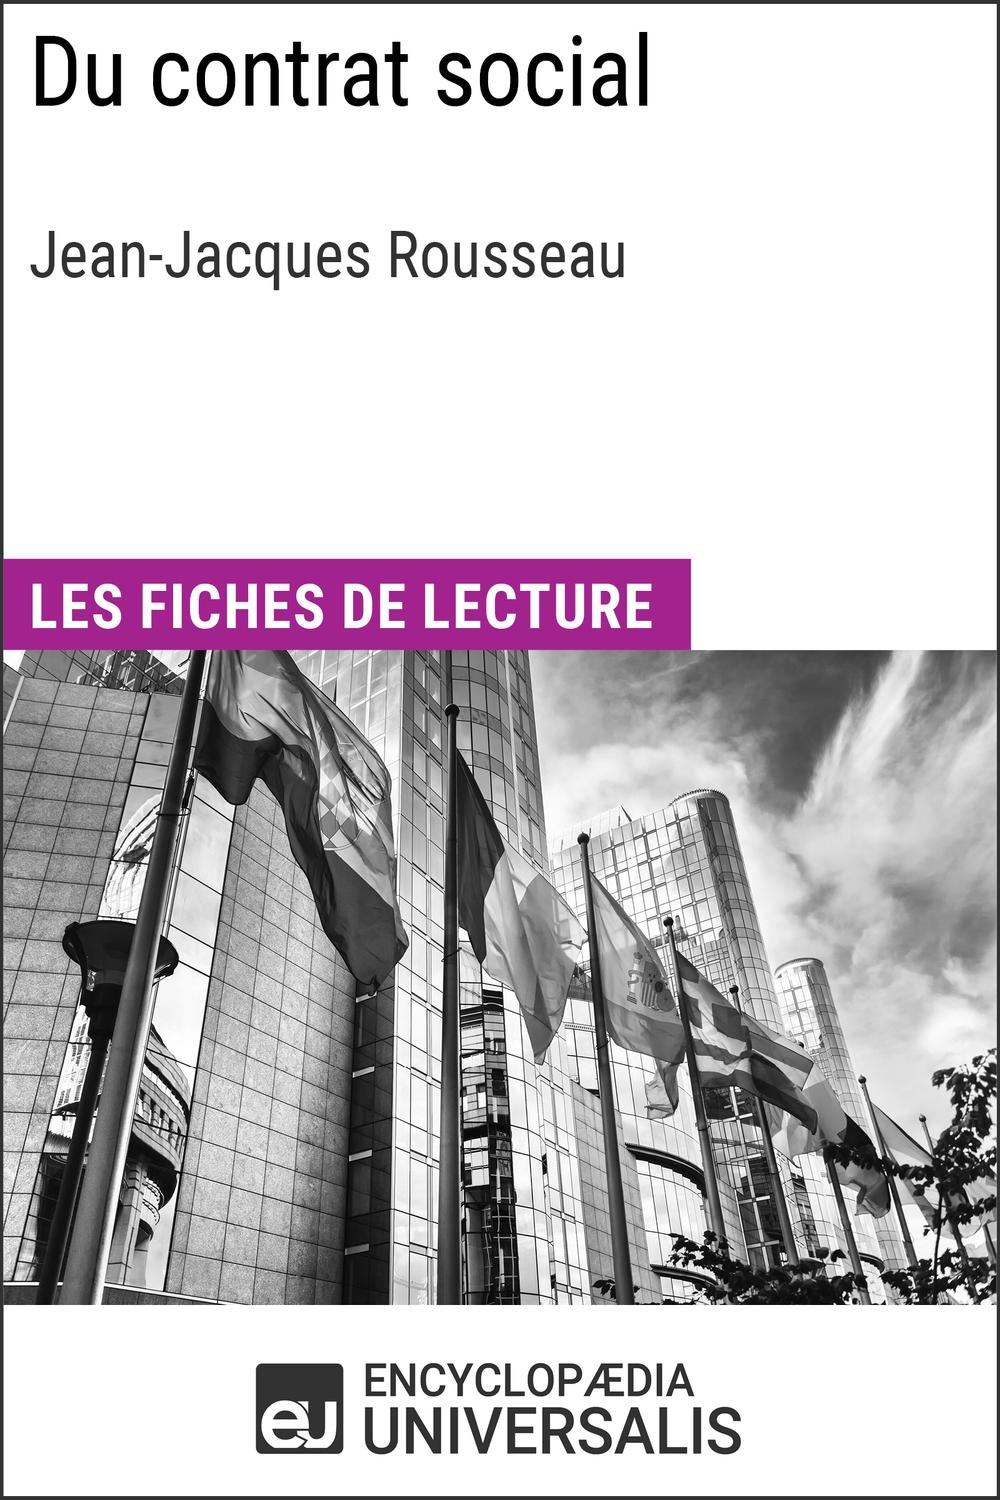 Du contrat social de Jean-Jacques Rousseau - Encyclopaedia Universalis